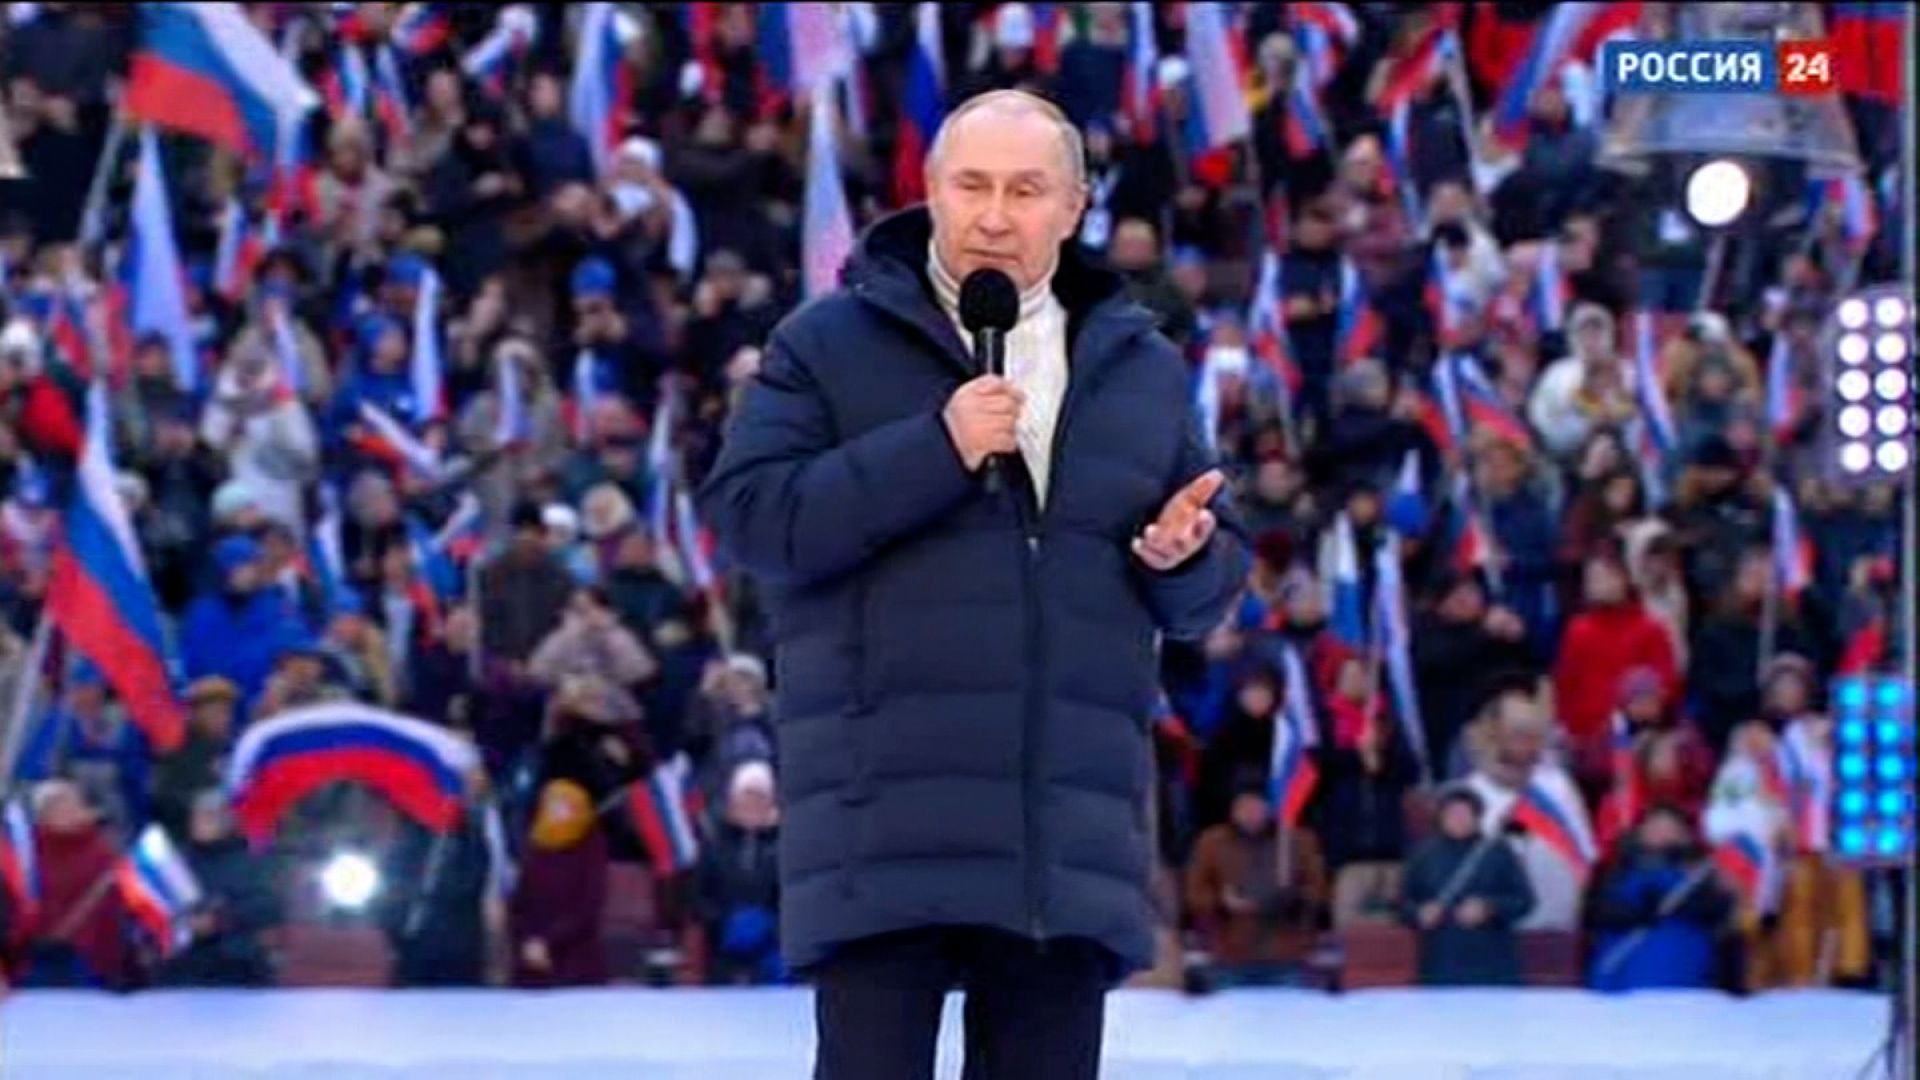 Ukraine slams Louis Vuitton for 'pro-Putin' ad